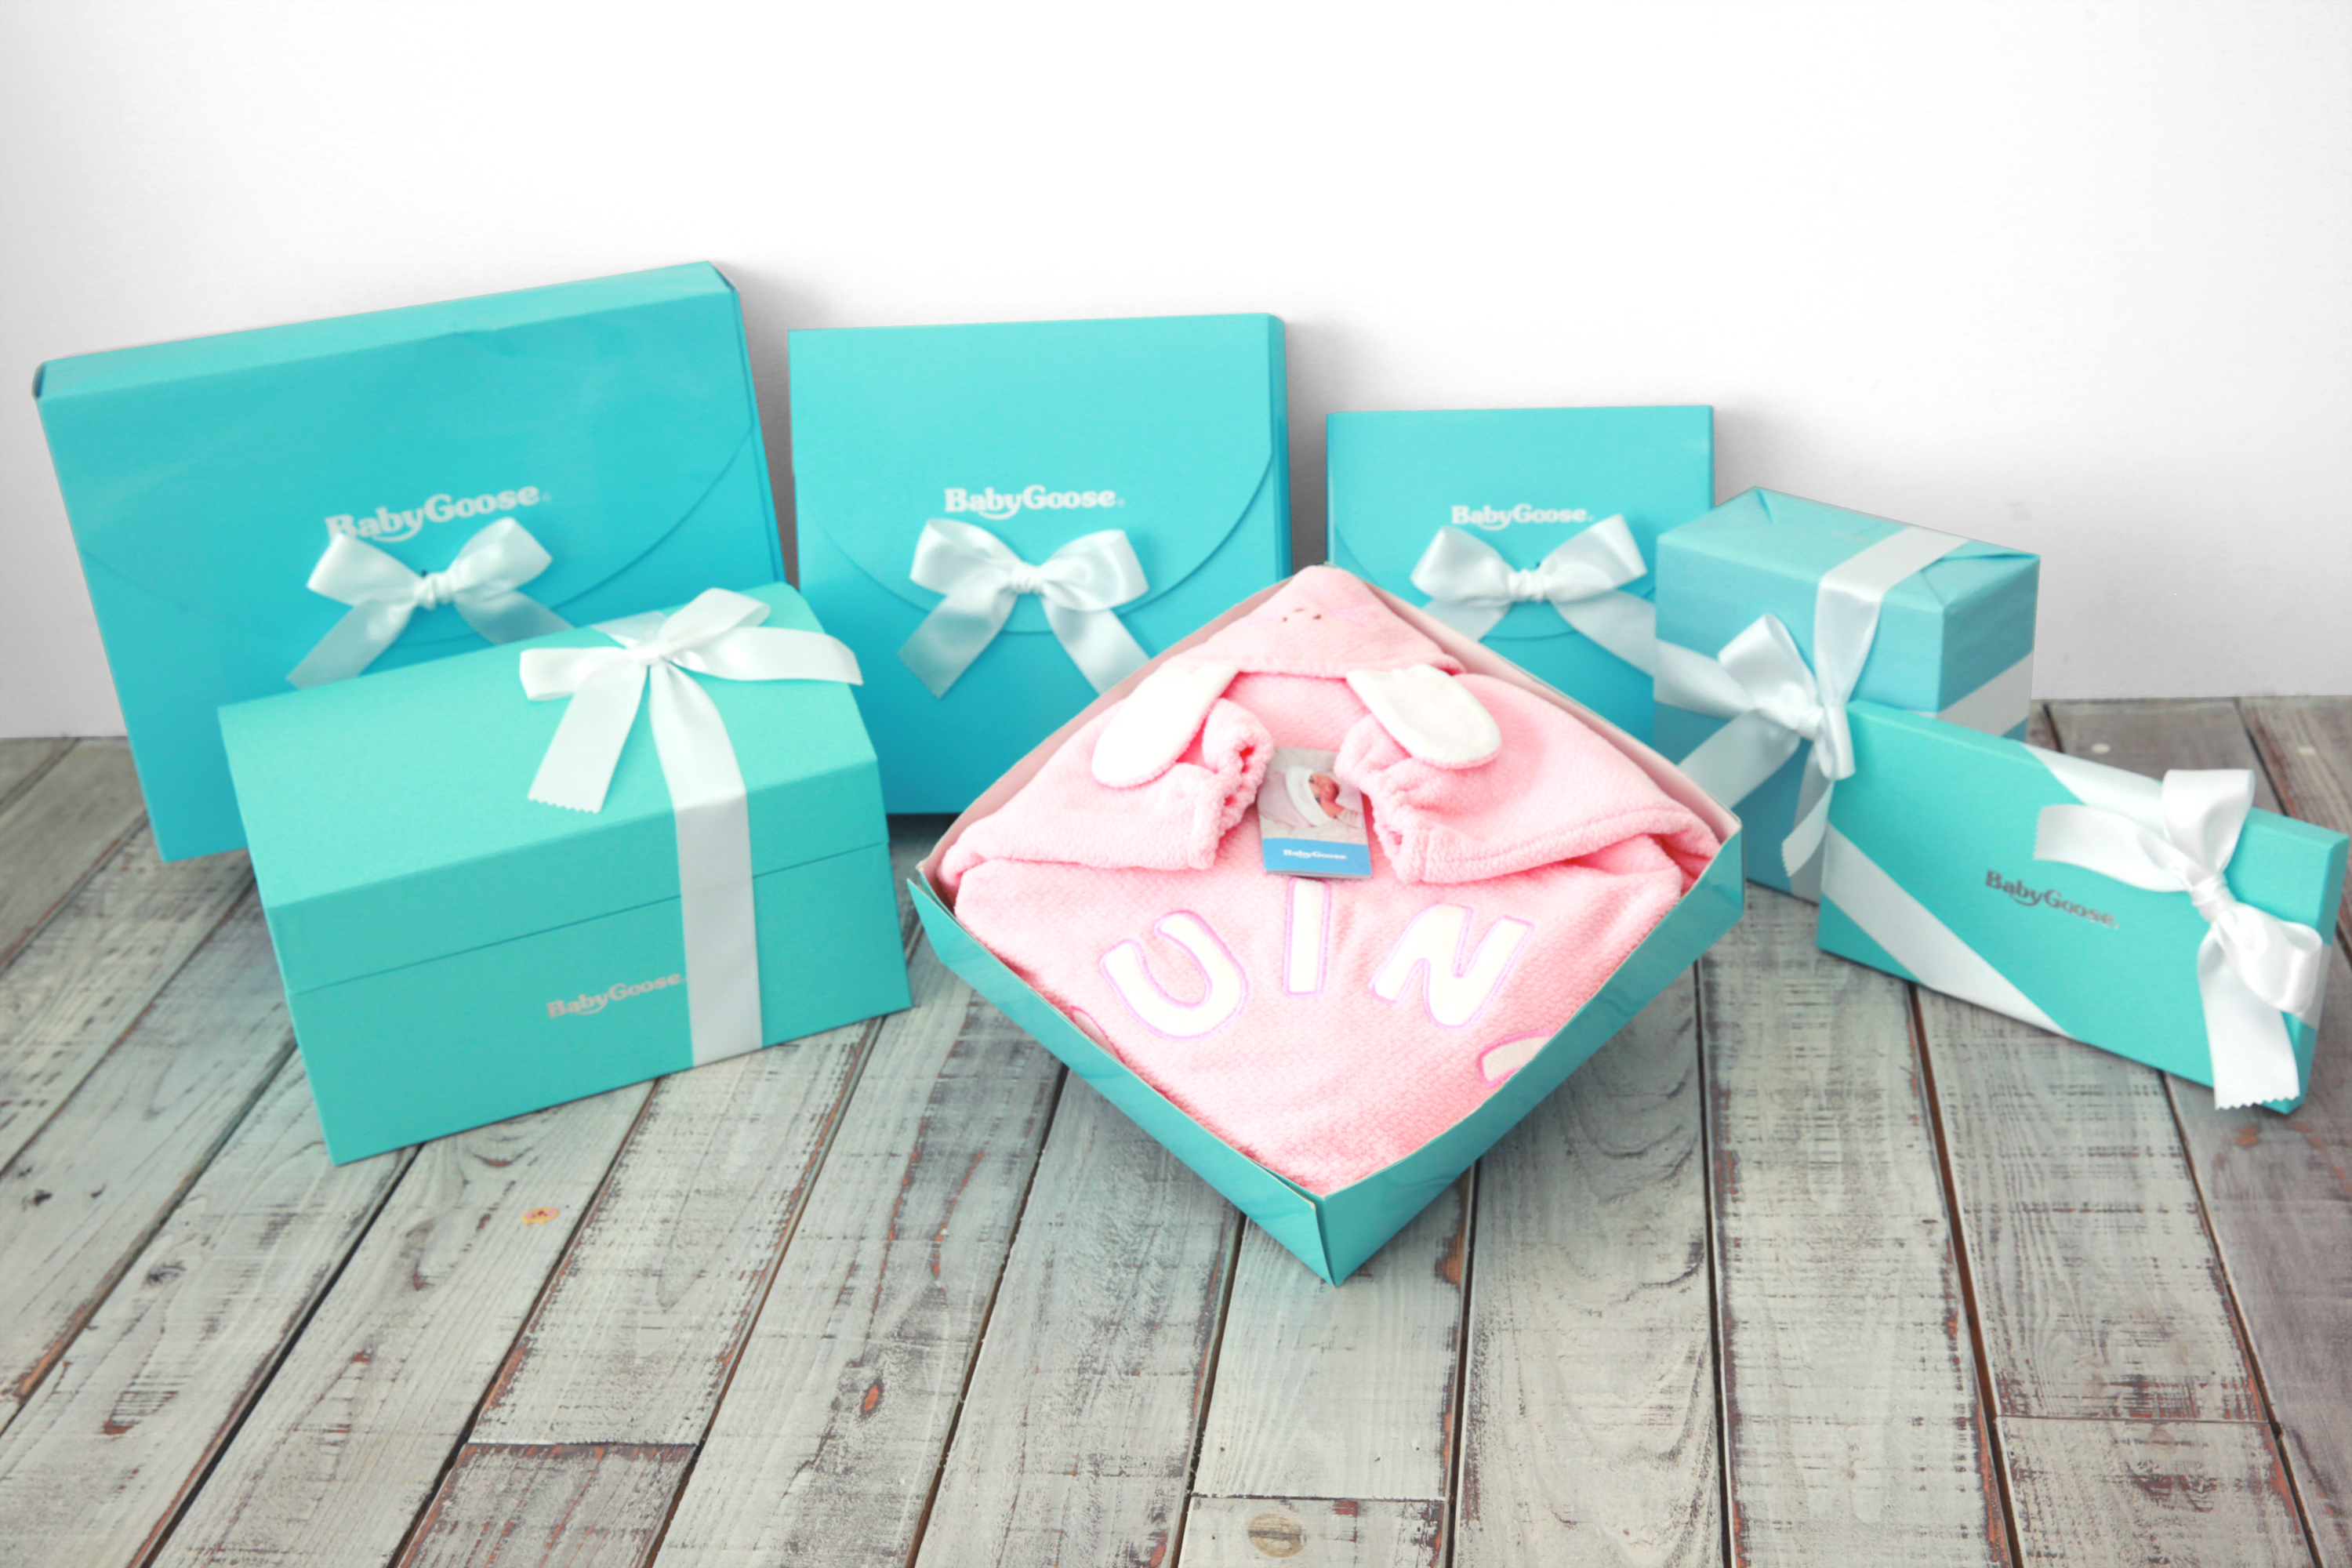 出産前や産休に入る妊婦さんに喜ばれる おすすめプレゼント12選 喜ばれる出産祝いの情報サイト ベビギフ